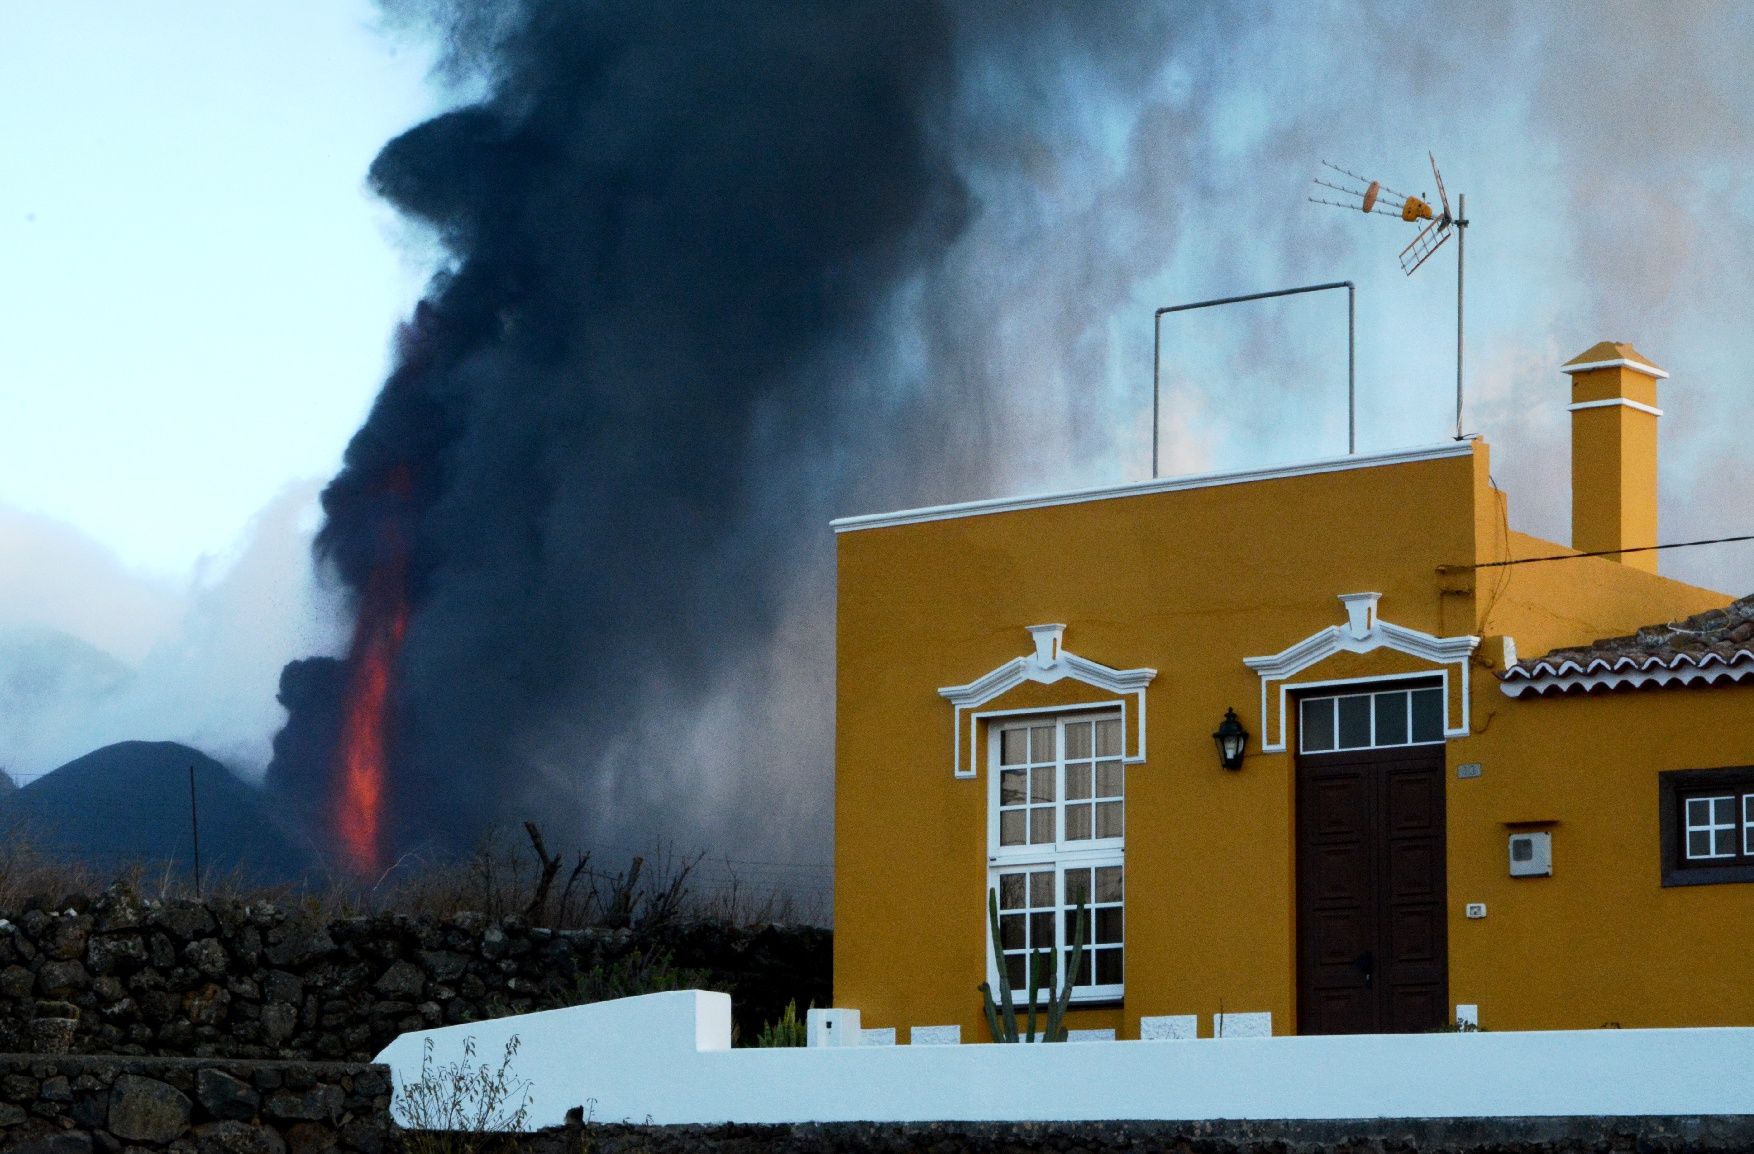 L'erupció del volcà fotografiada per un manresà